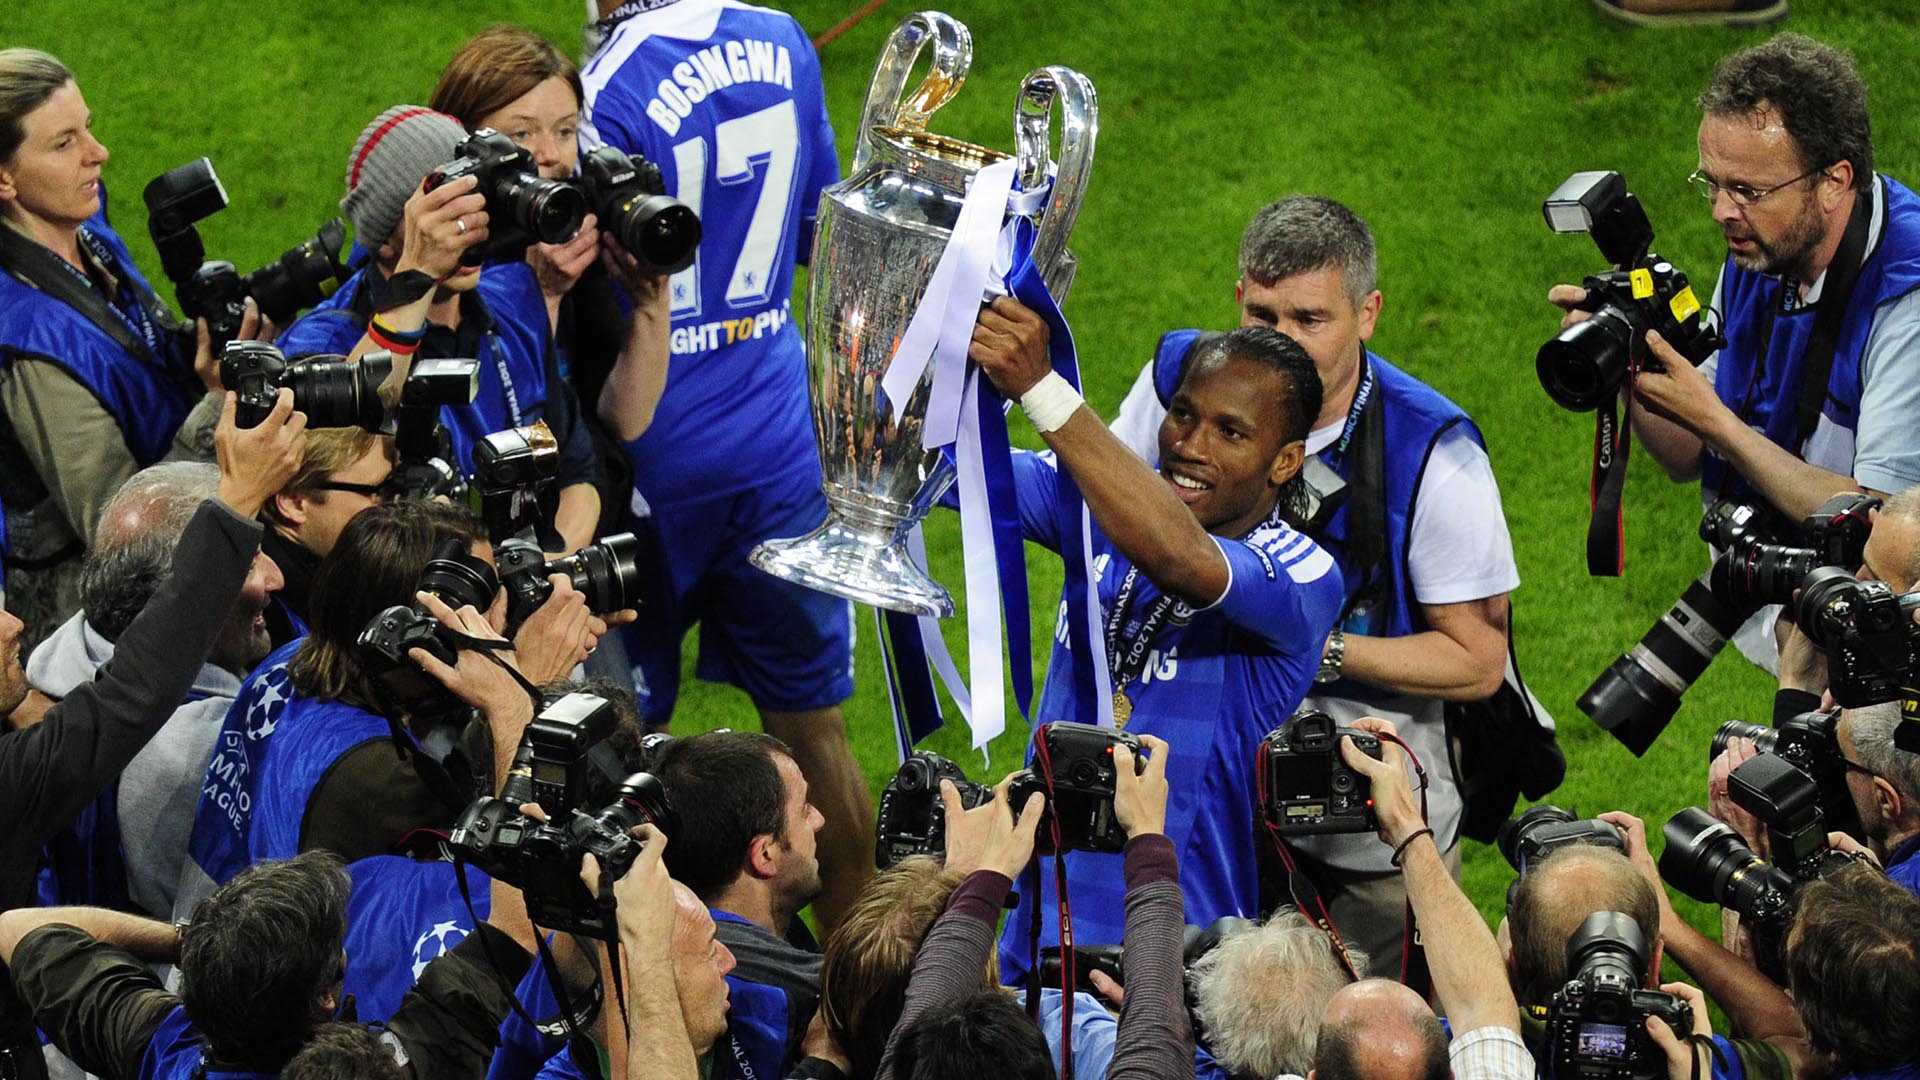 Didier Drogba celebra con el trofeo en alto el primer triunfo del Chelsea en la final de la Champions League. (AFP PHOTO / JOHN MACDOUGALL)